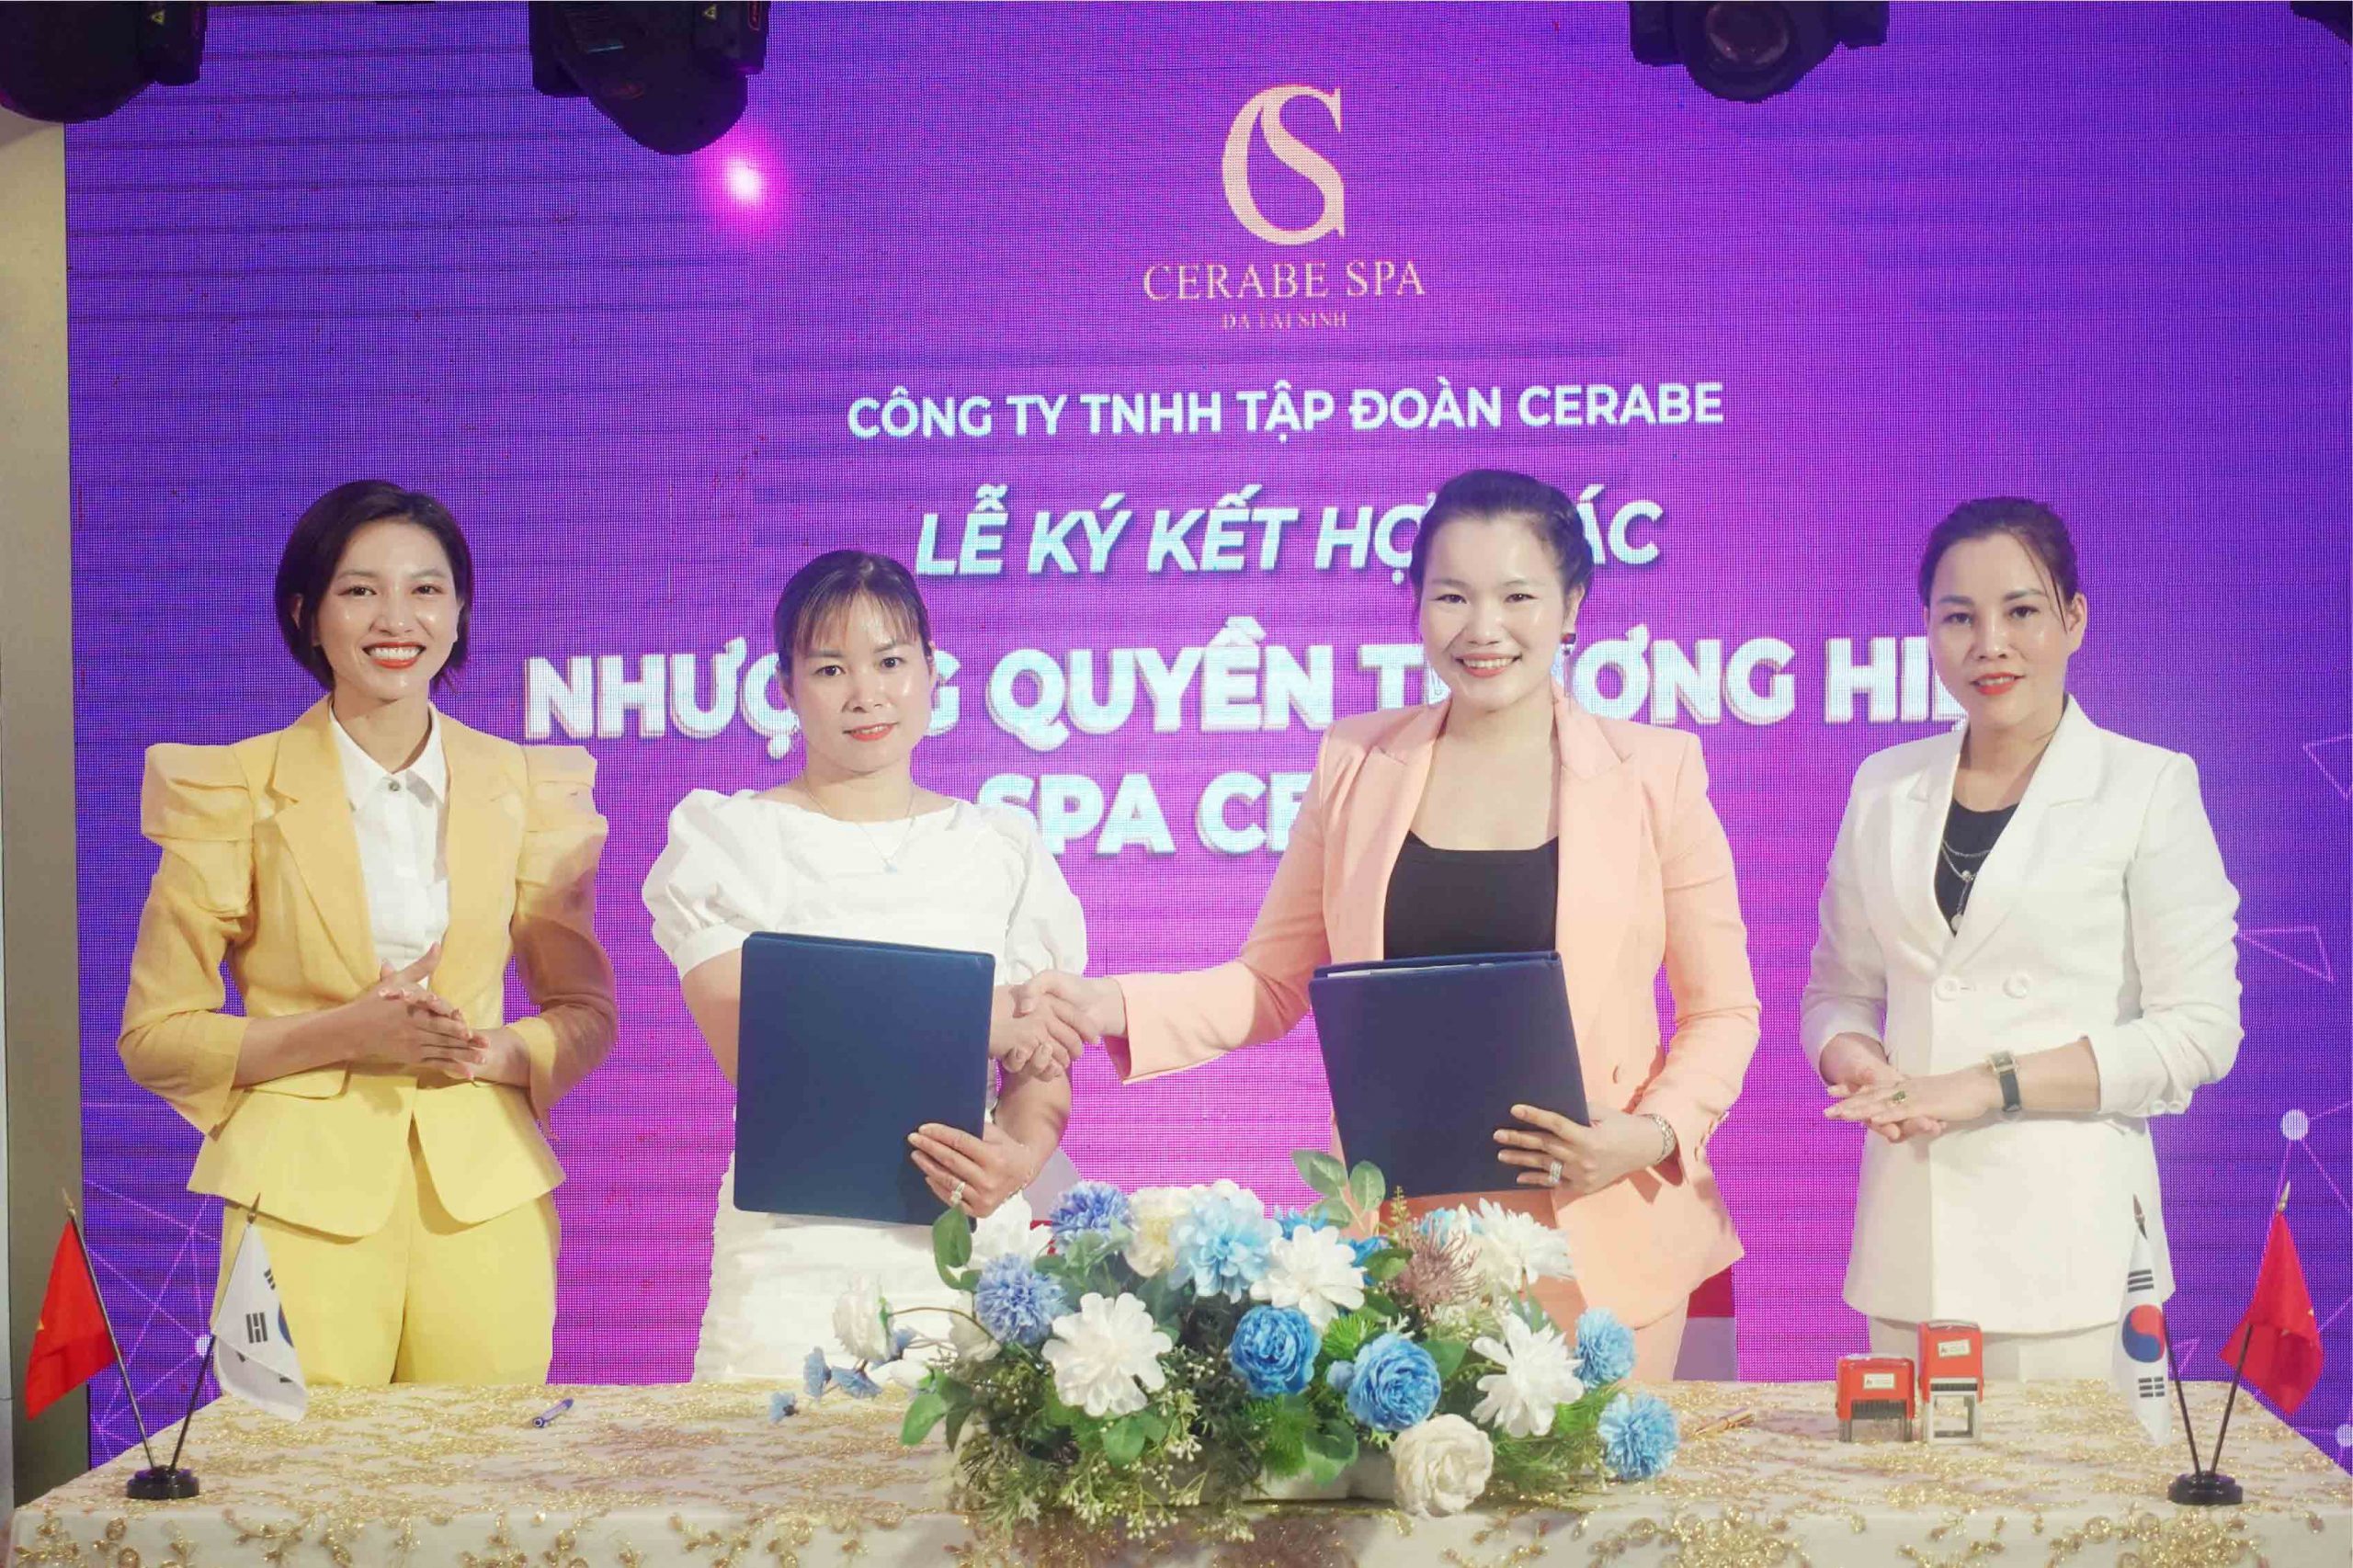 CEO tân chủ Spa Kiều Thị Hà đã ký kết hợp tác với Chuỗi nhượng quyền thương hiệu Spa Cerabe